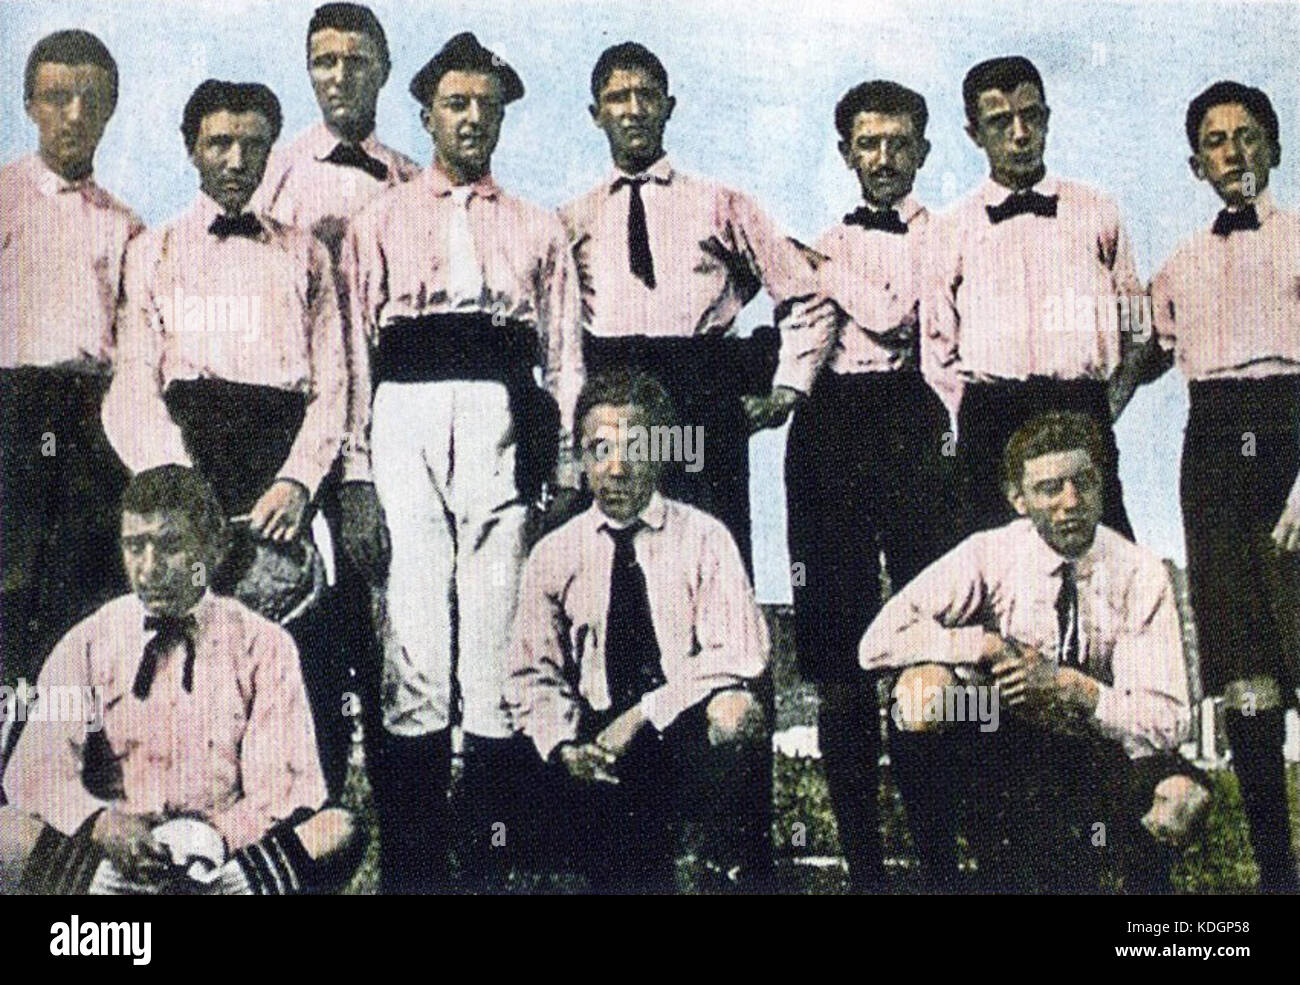 Sport Club Juventus 1897 1898 Stock Photo - Alamy